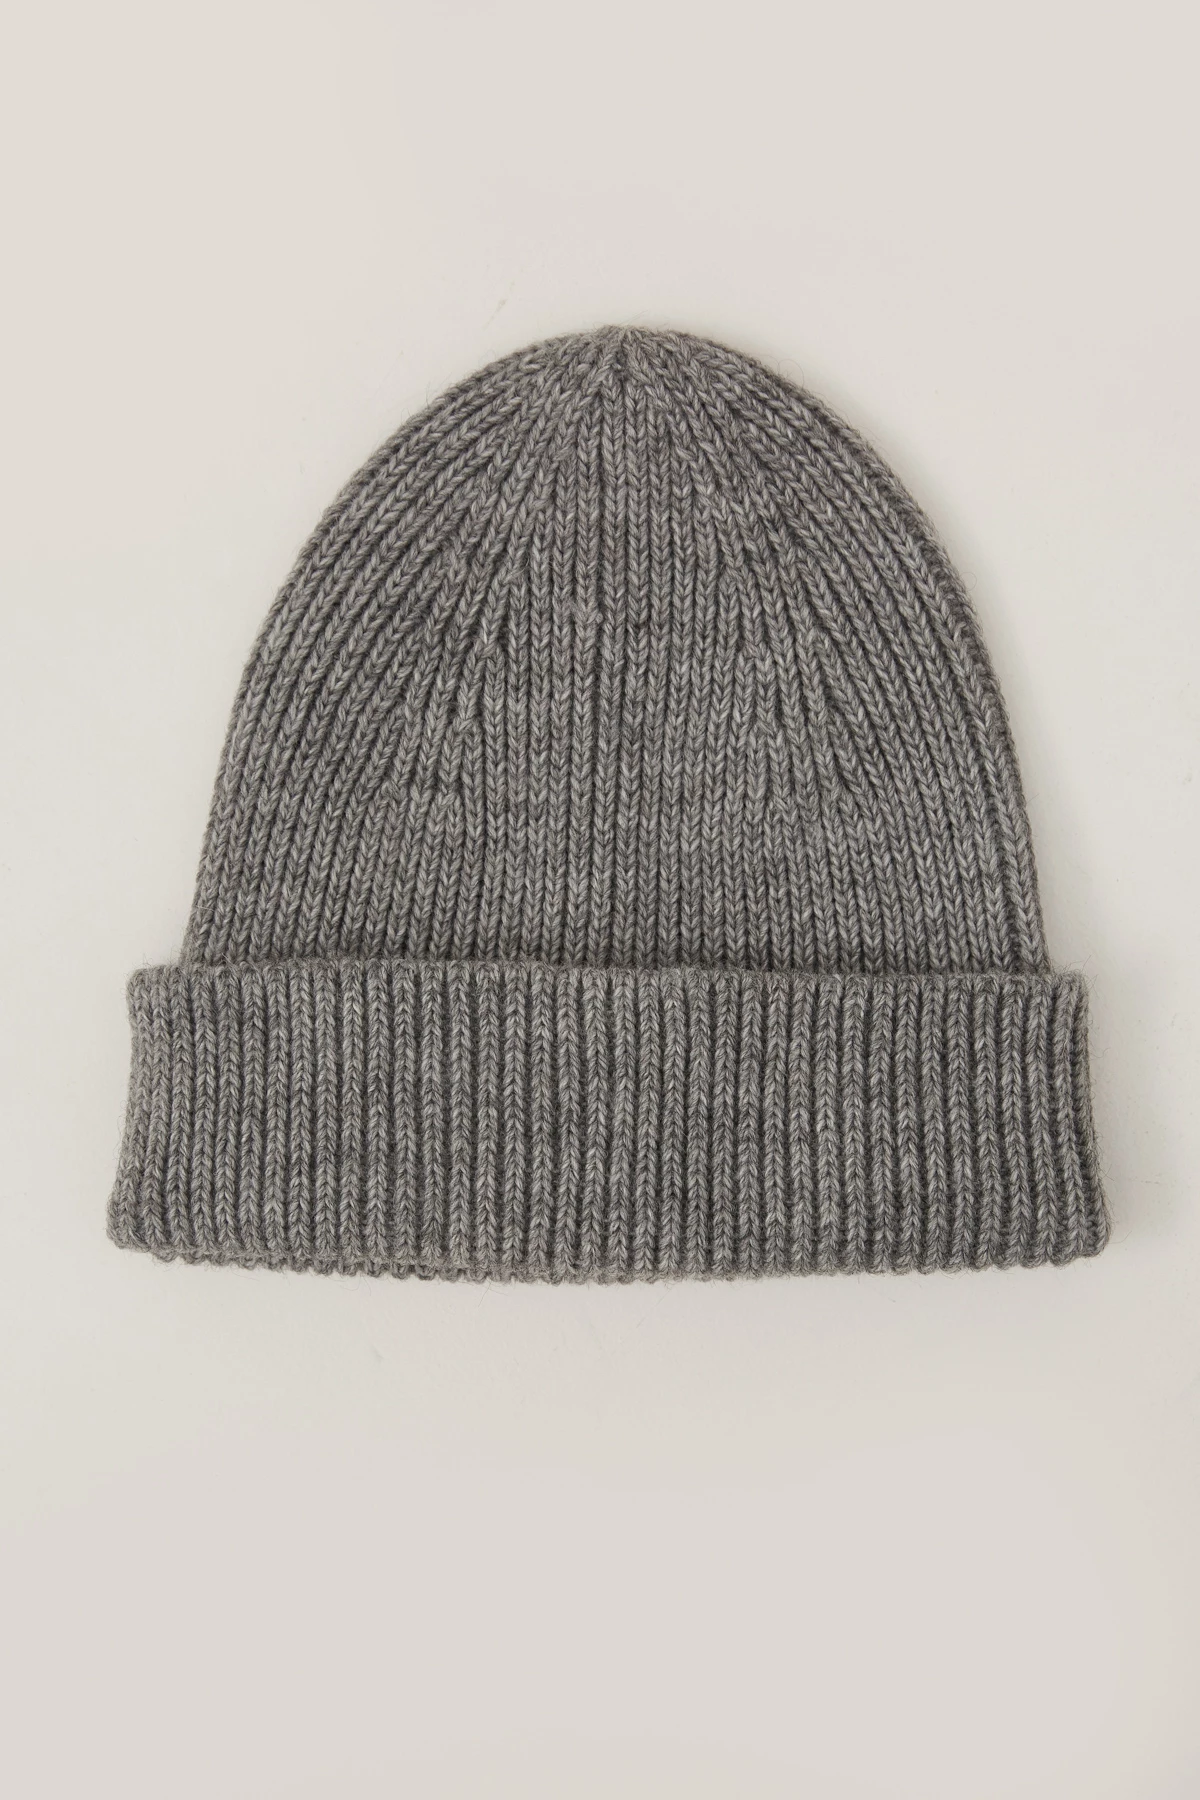 Knitted woolen grey beanie hat, photo 3